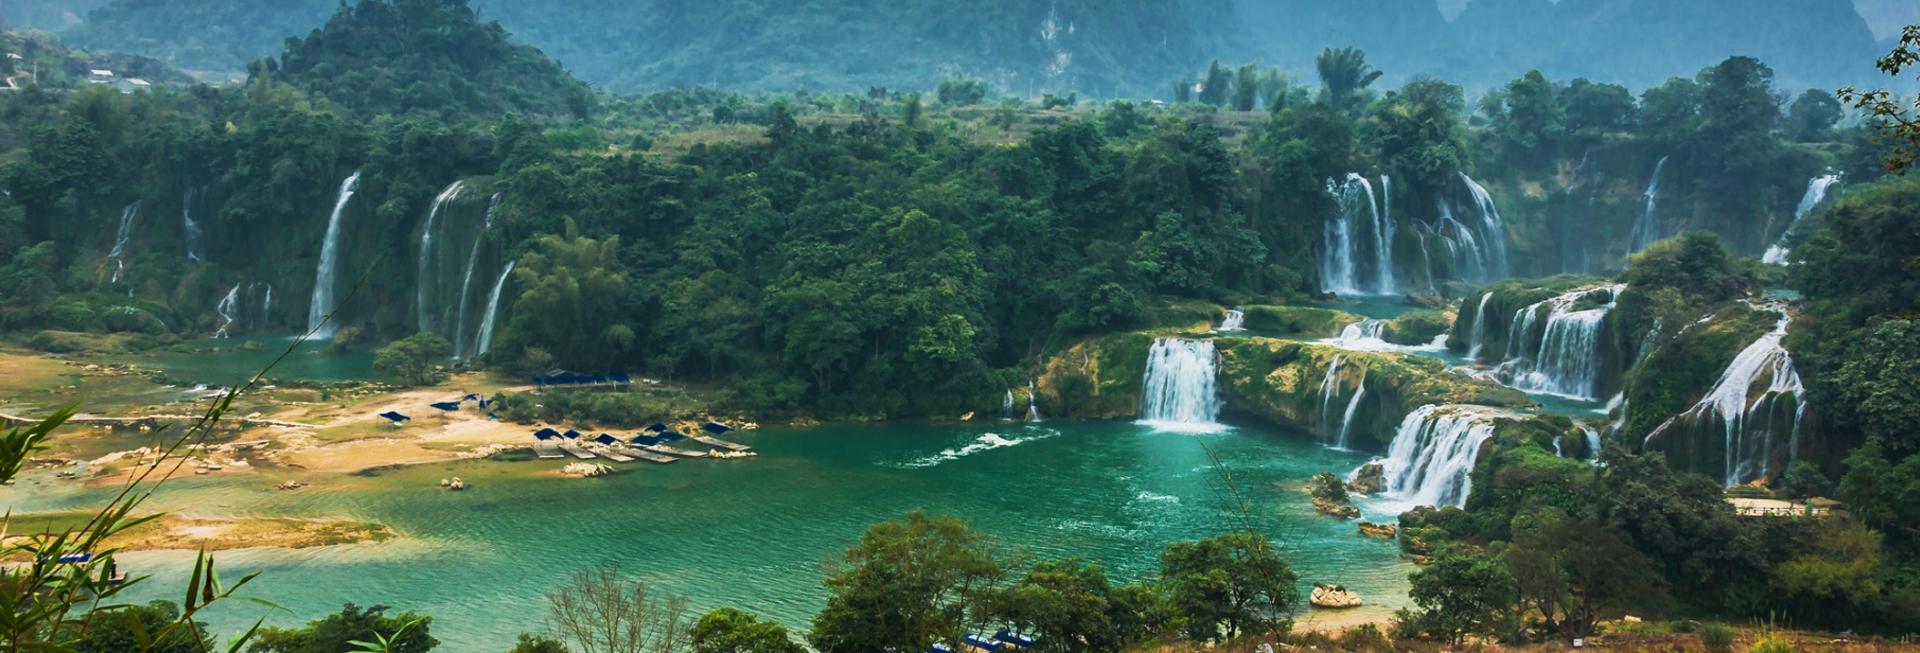 Detian Waterfall, Nanning, Guangxi